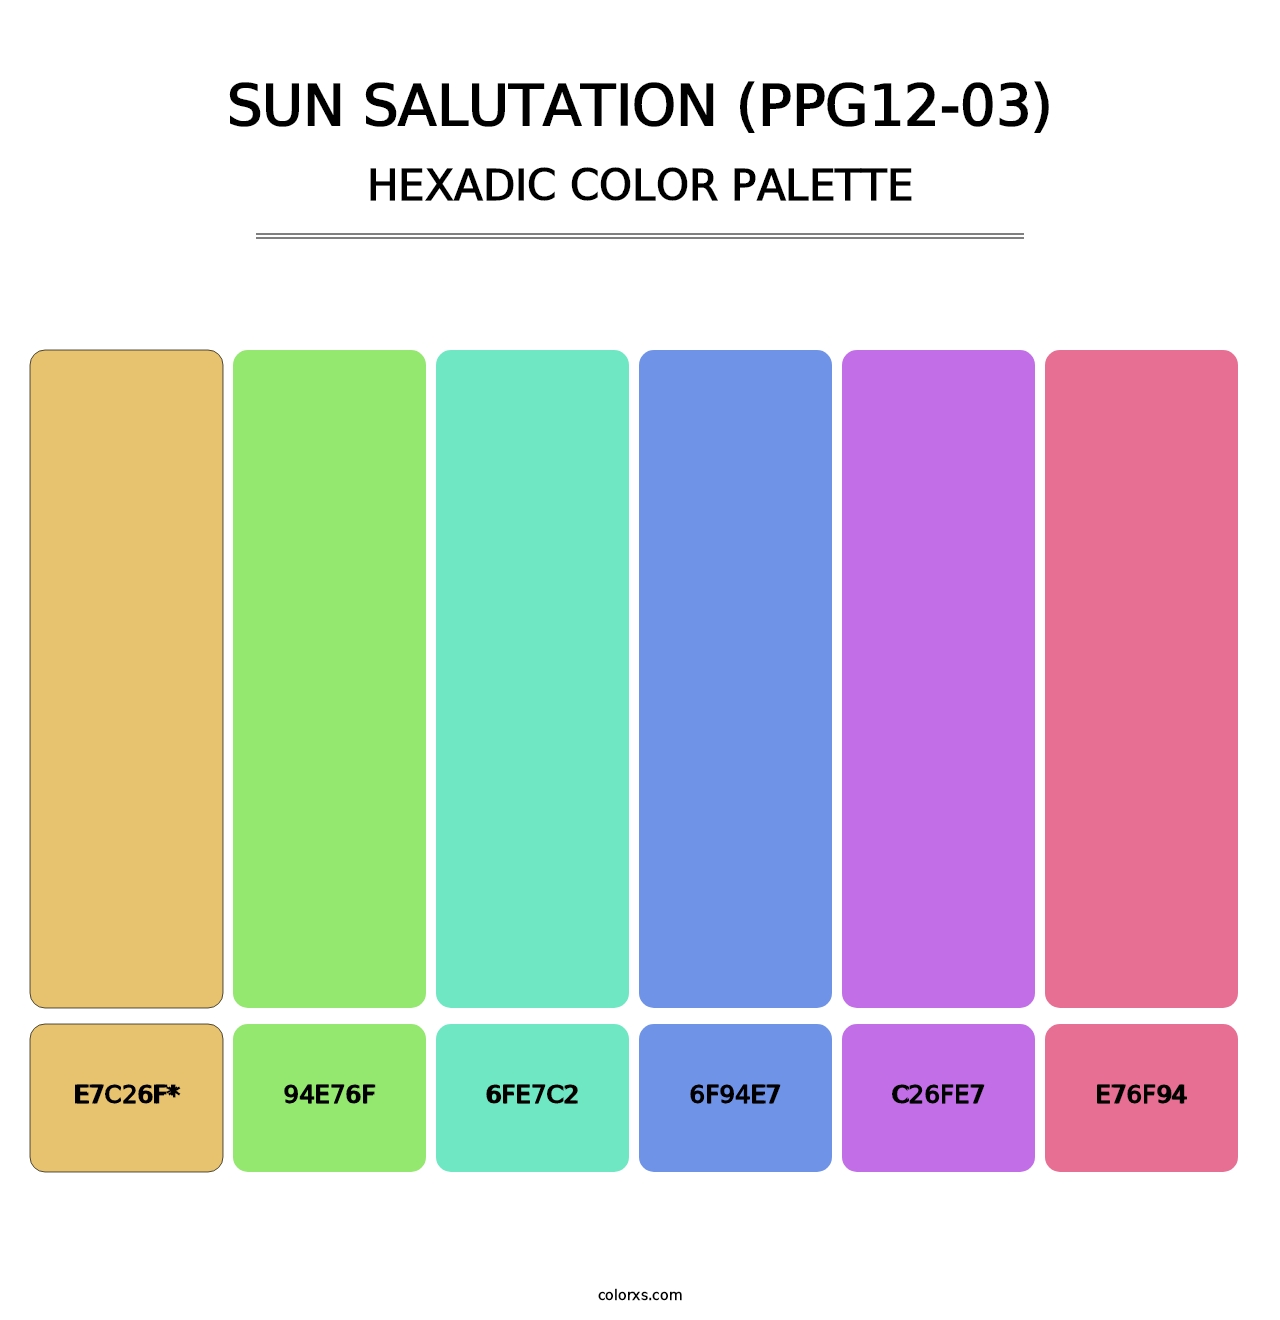 Sun Salutation (PPG12-03) - Hexadic Color Palette